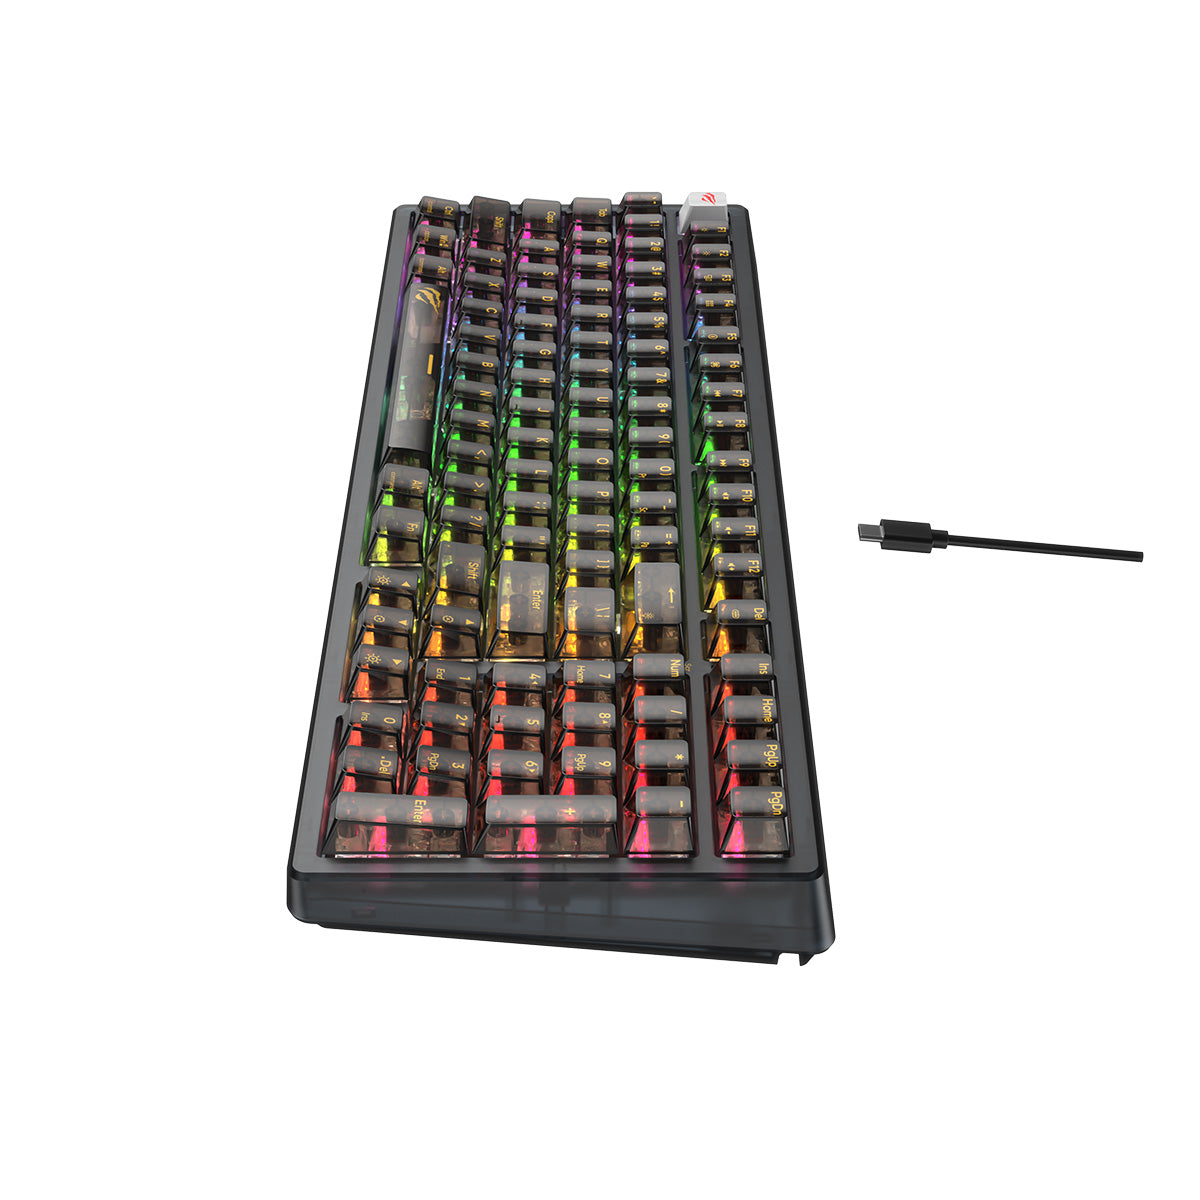 HAVIT KB875L Fully Transparent Backlit Mechanical Gaming Keyboard